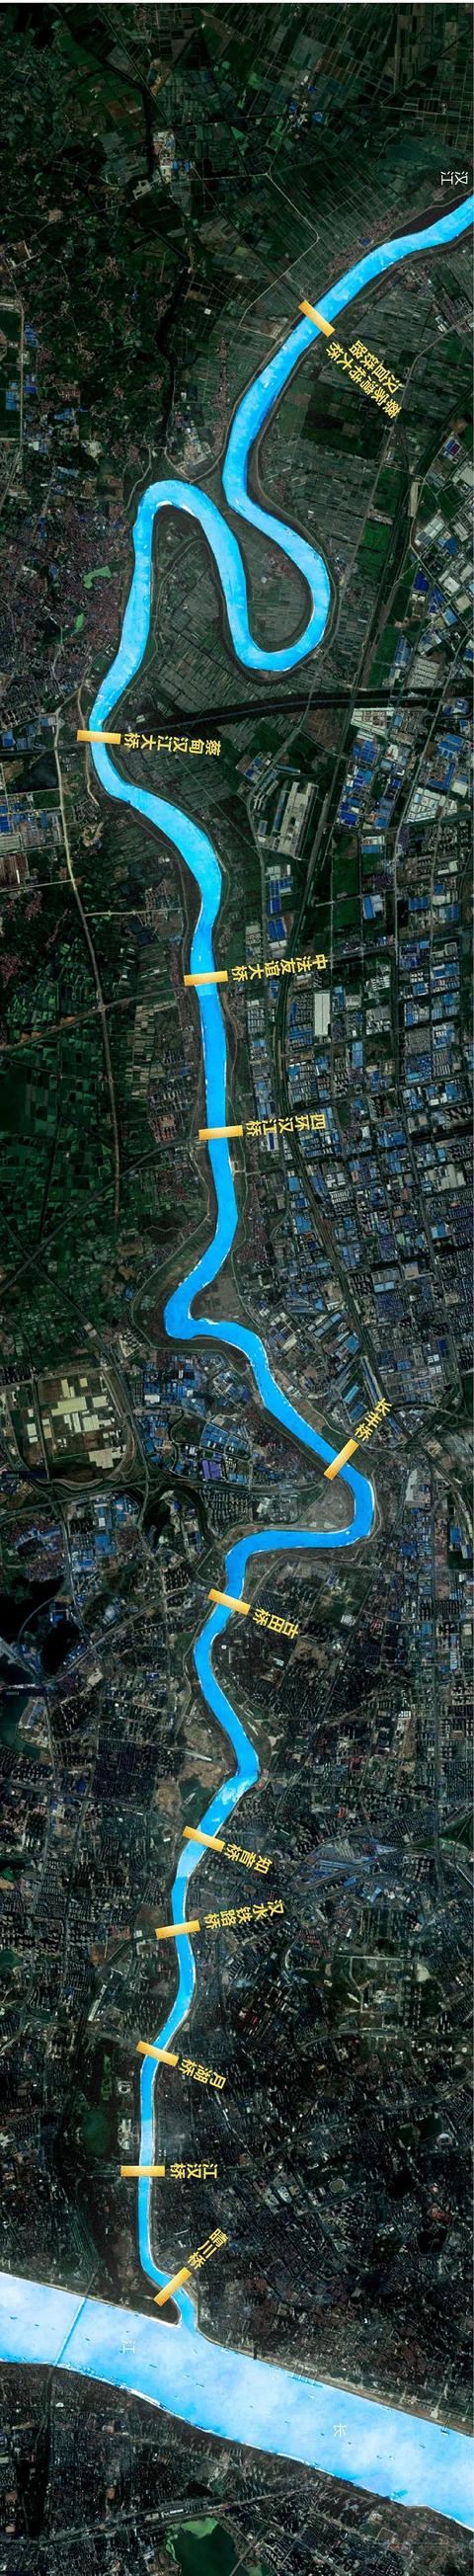 江汉七桥全景图集,江汉一桥地图(3)